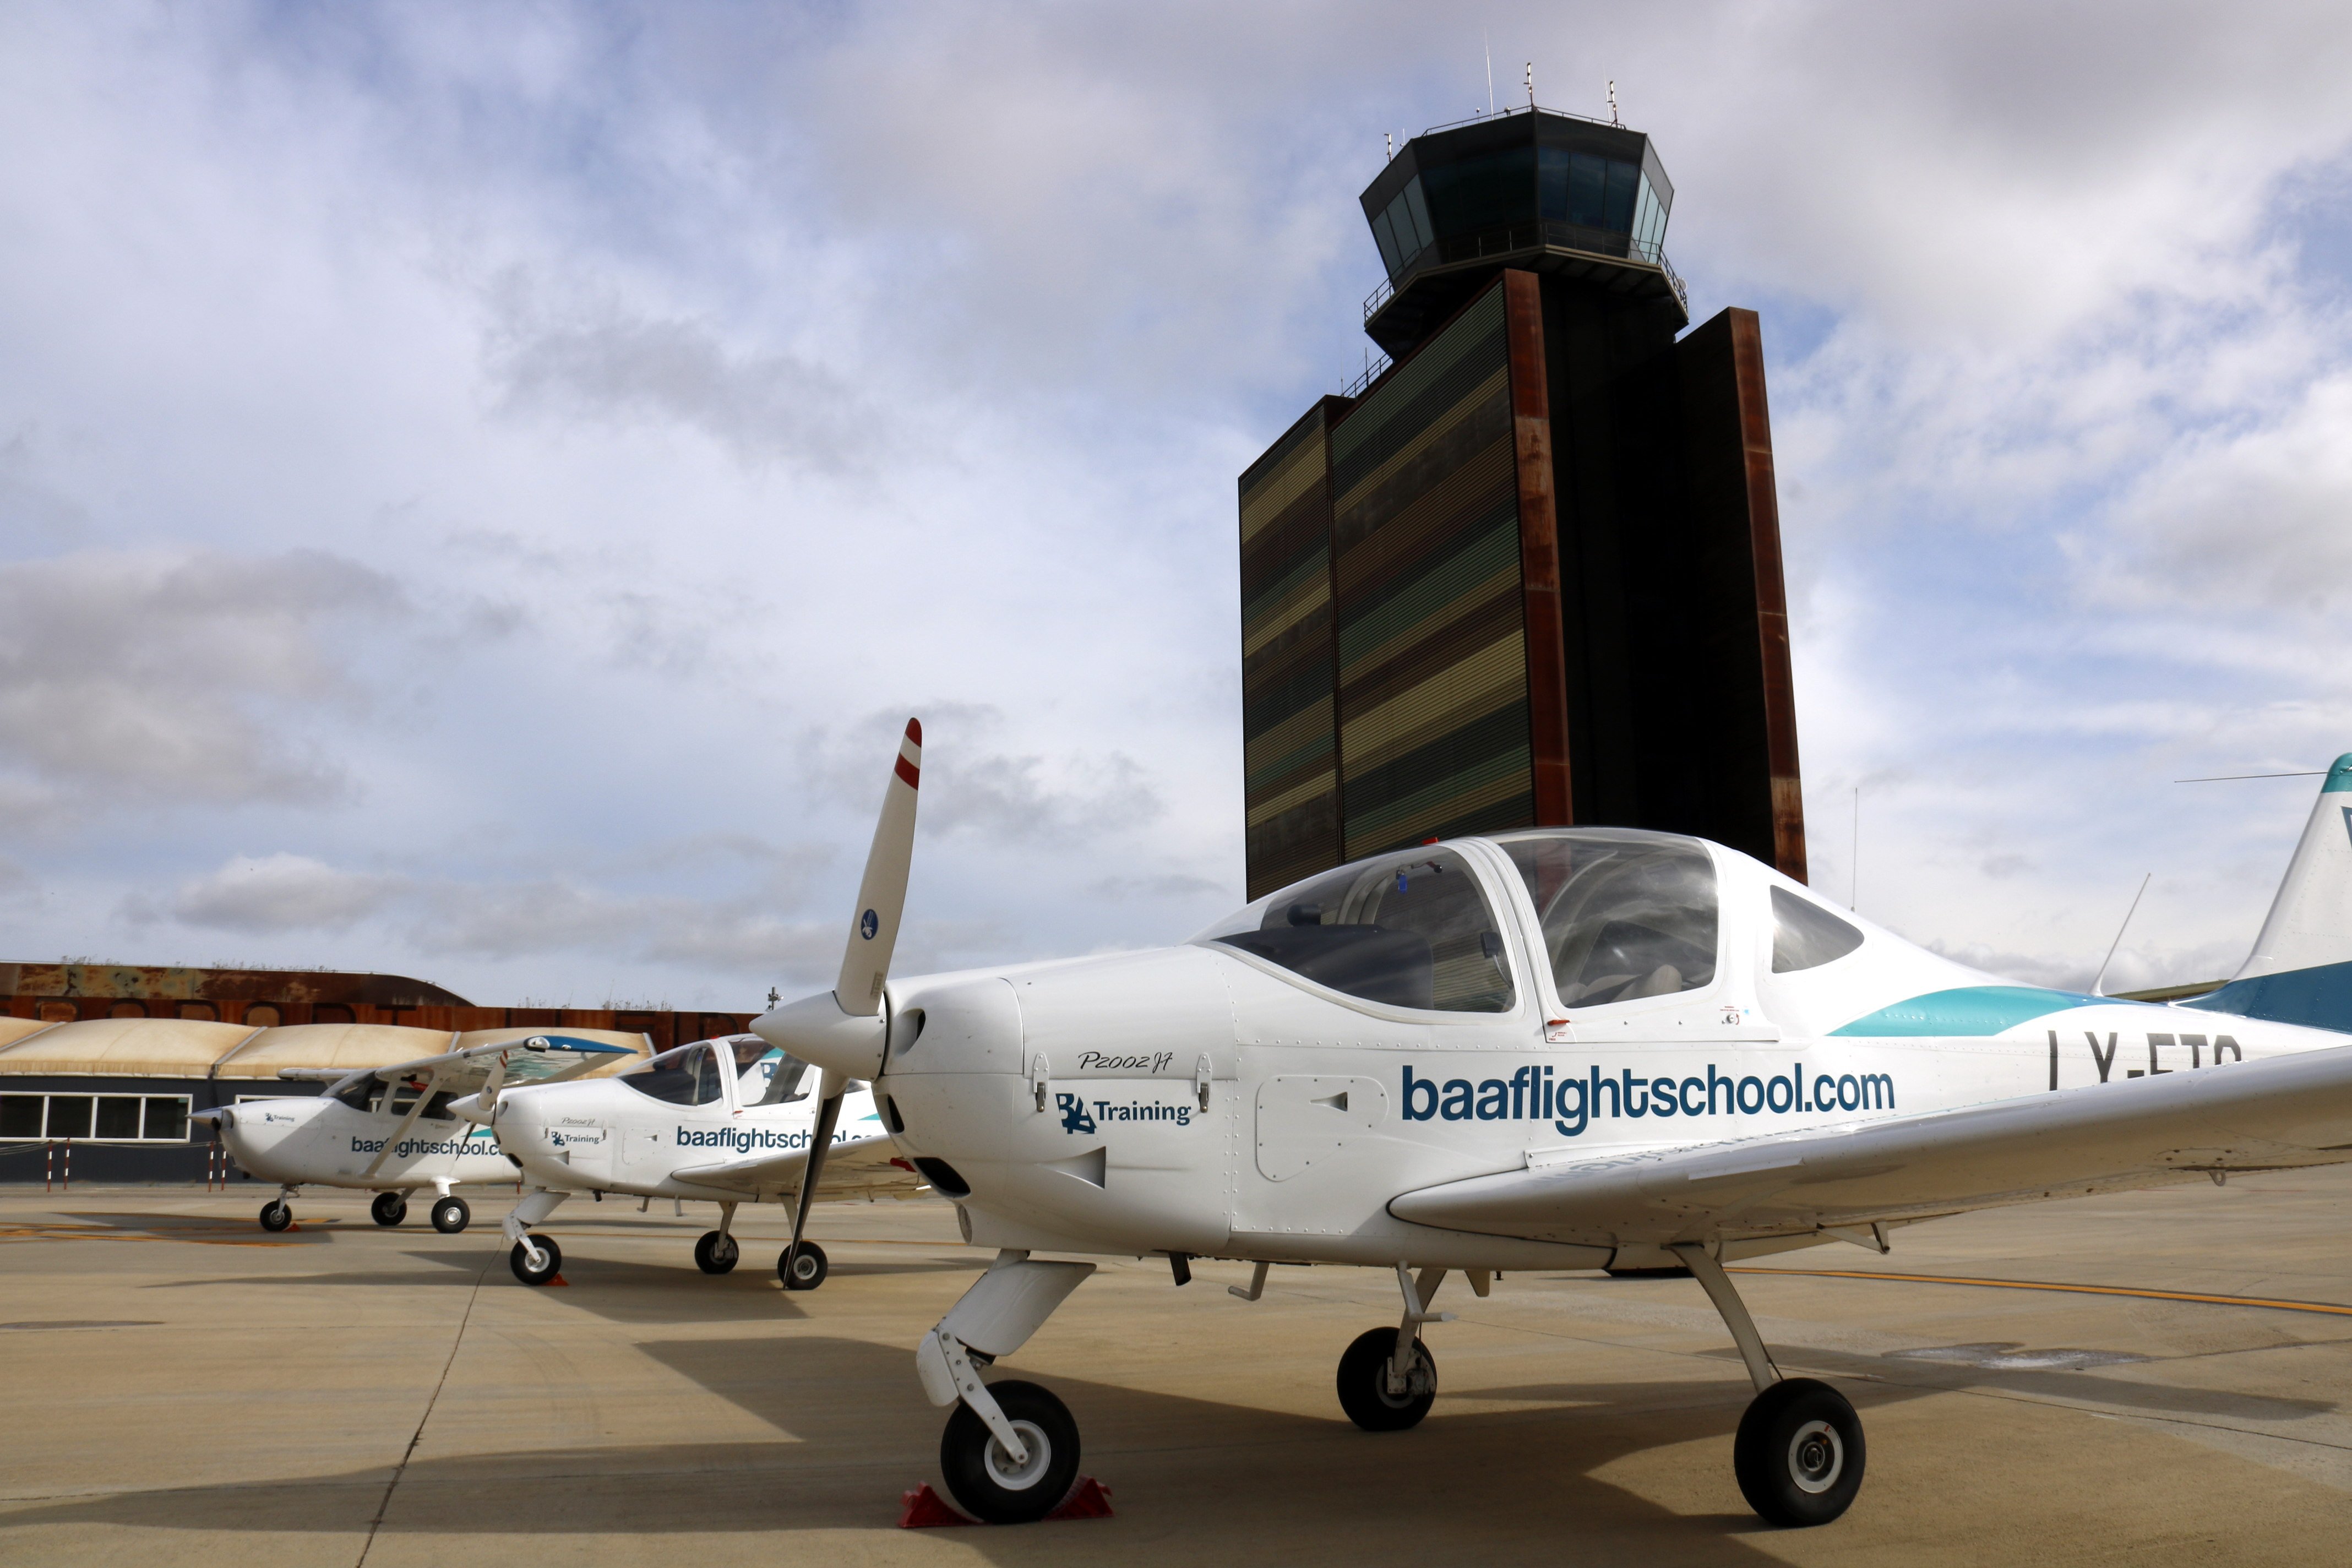 L'Aeroport d'Alguaire es consolida com centre de formació de pilots